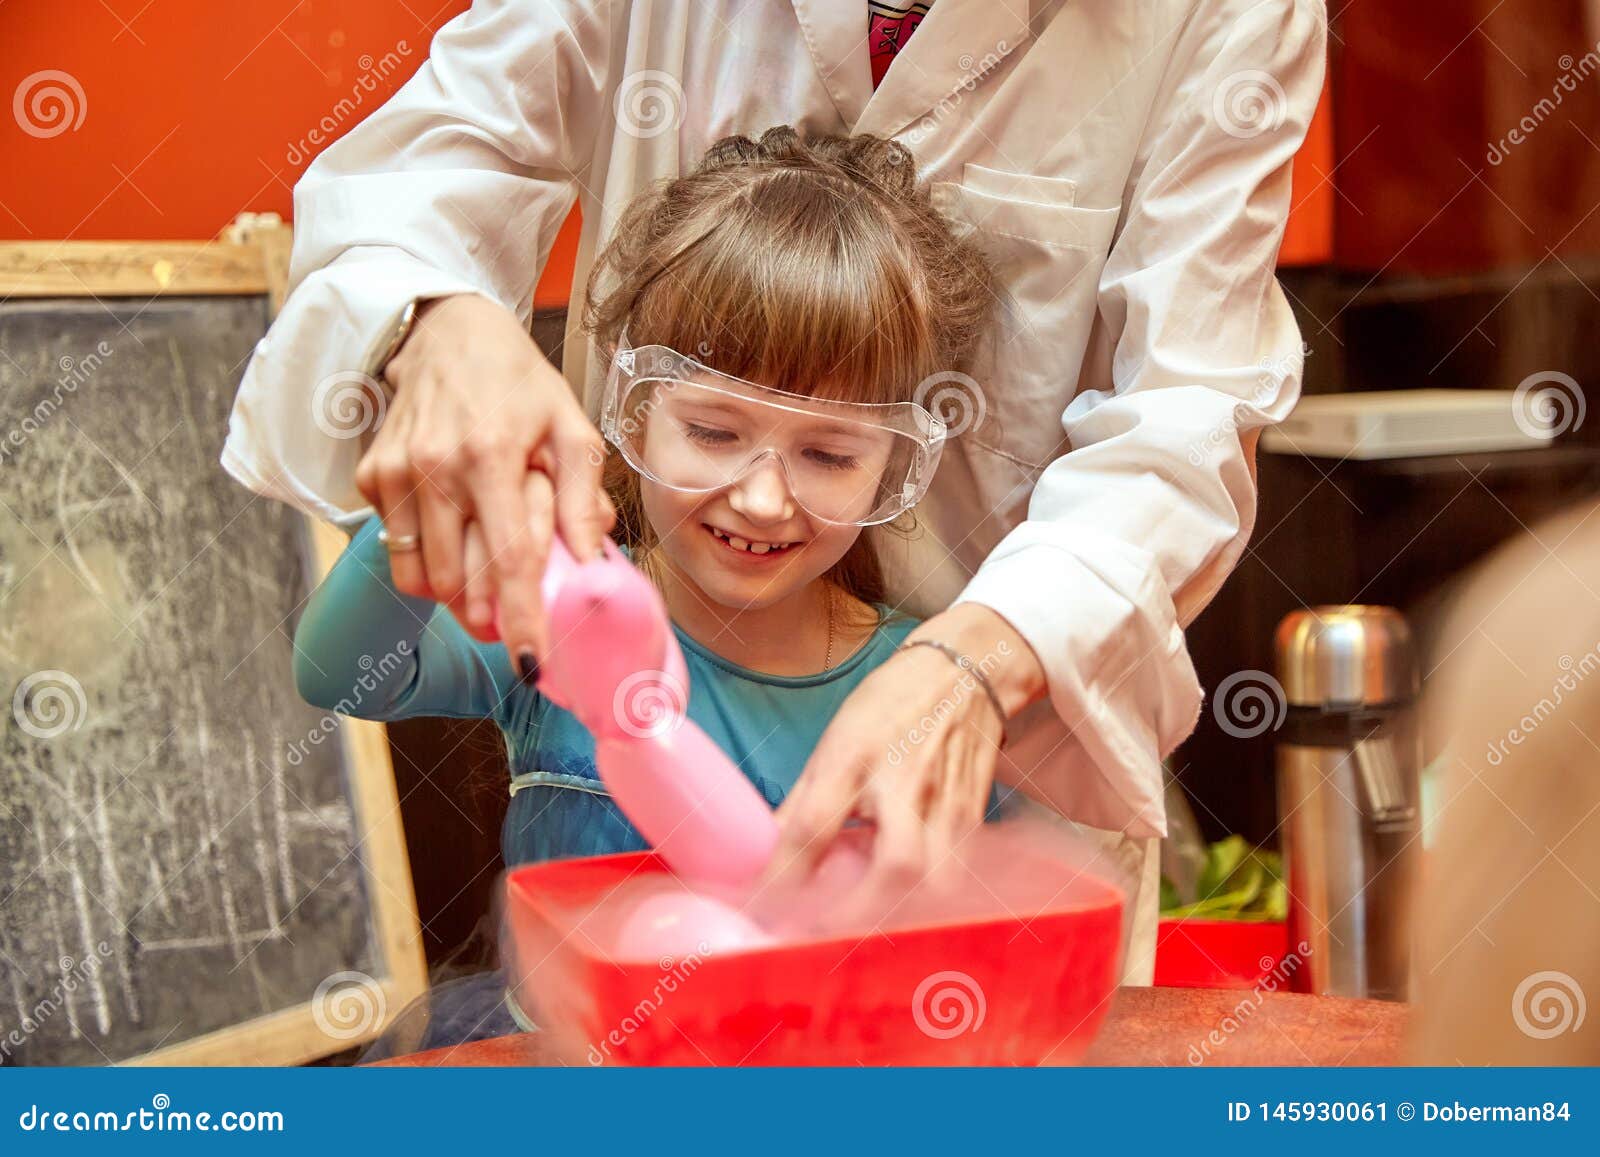 Χημικός παρουσιάστε για τα παιδιά Ο καθηγητής πραγματοποίησε τα χημικά πειράματα με το υγρό άζωτο στο μικρό κορίτσι γενεθλίων